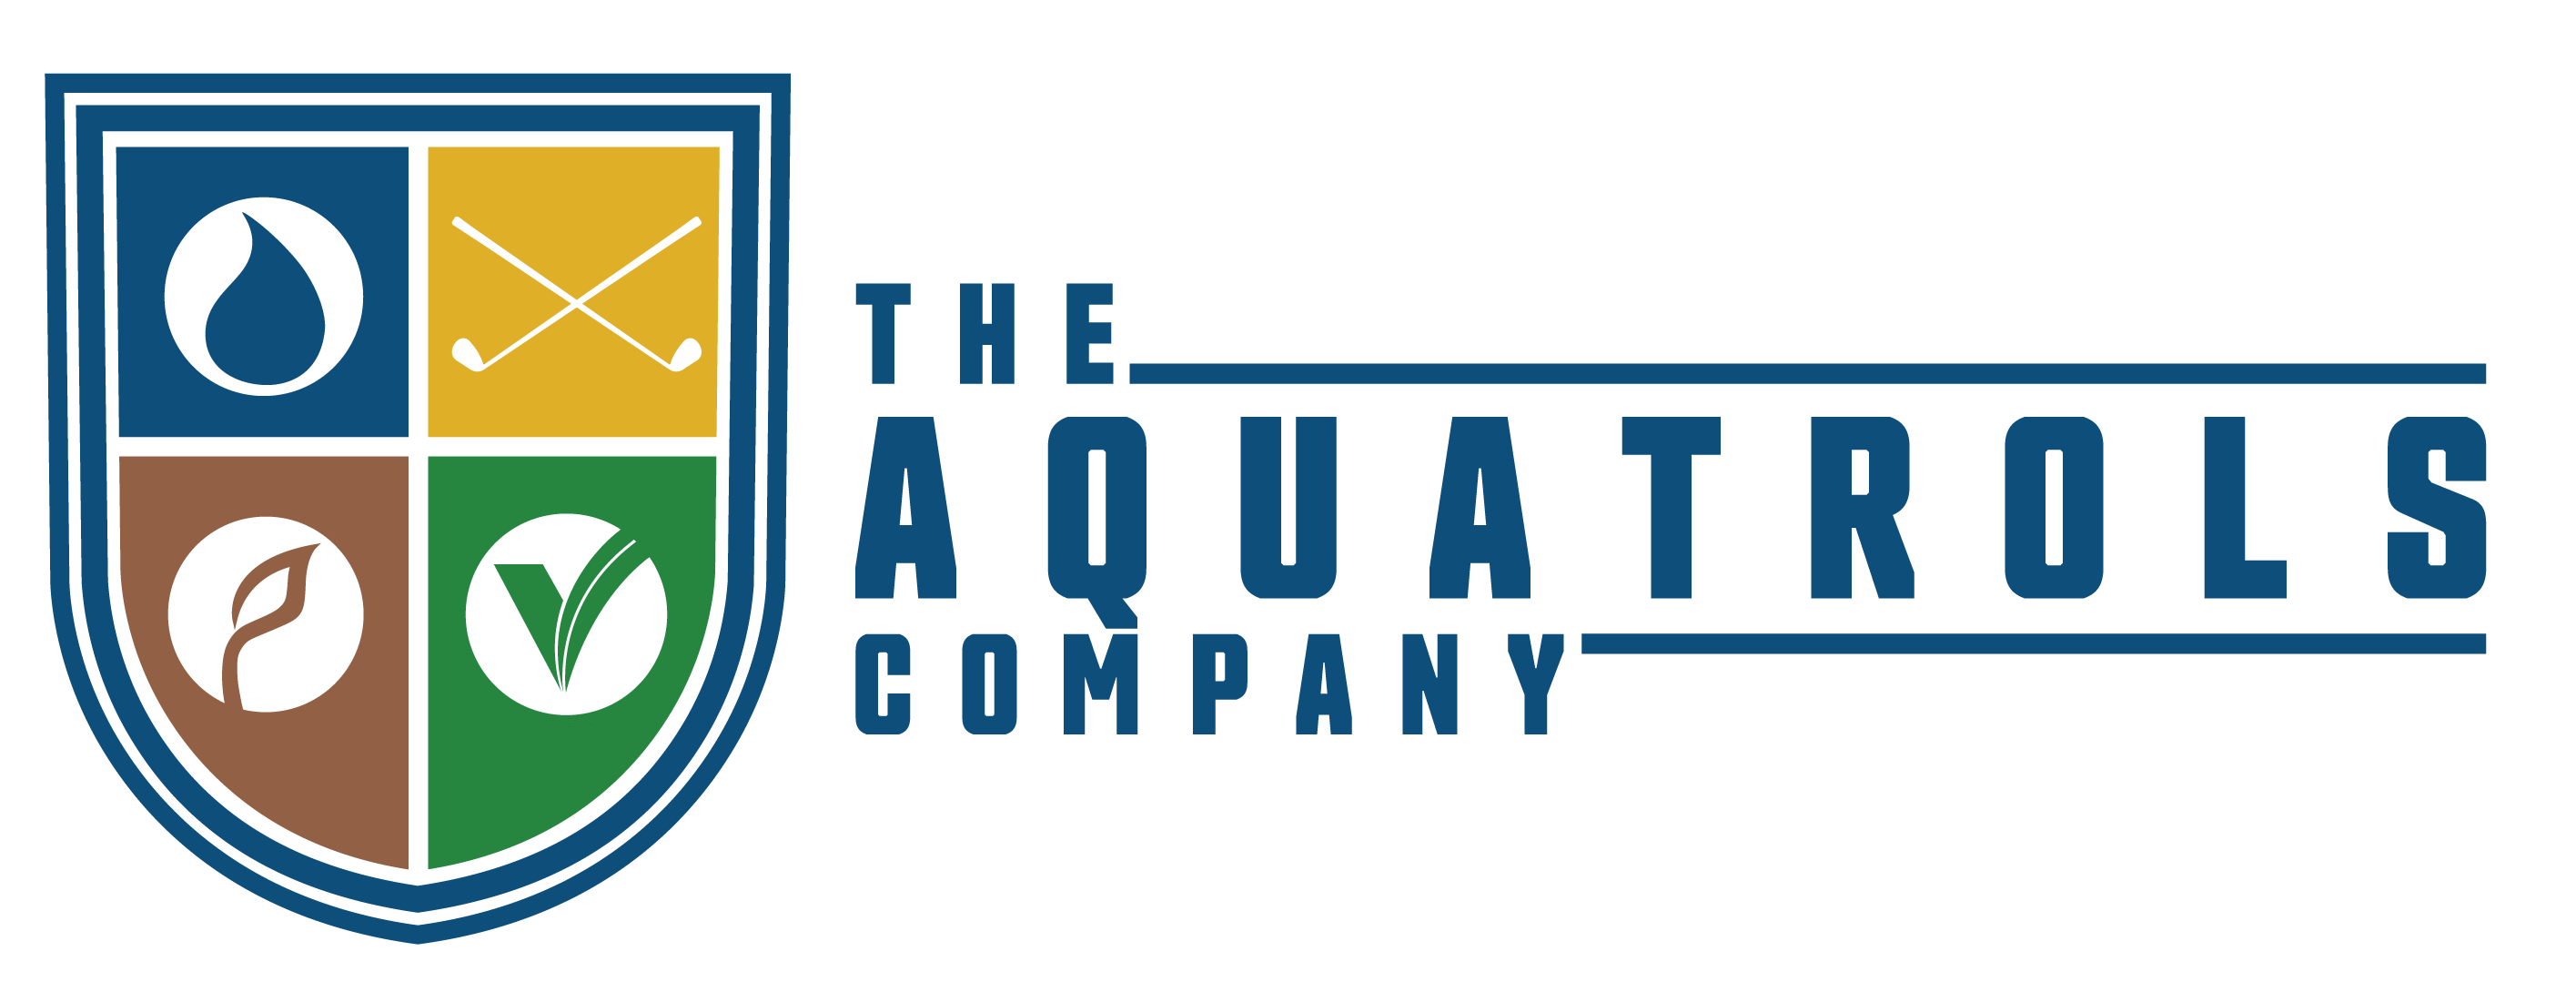 The Aquatrols Company Registers Premium Wetting Agents Under Latest EU FPR 1009/2019